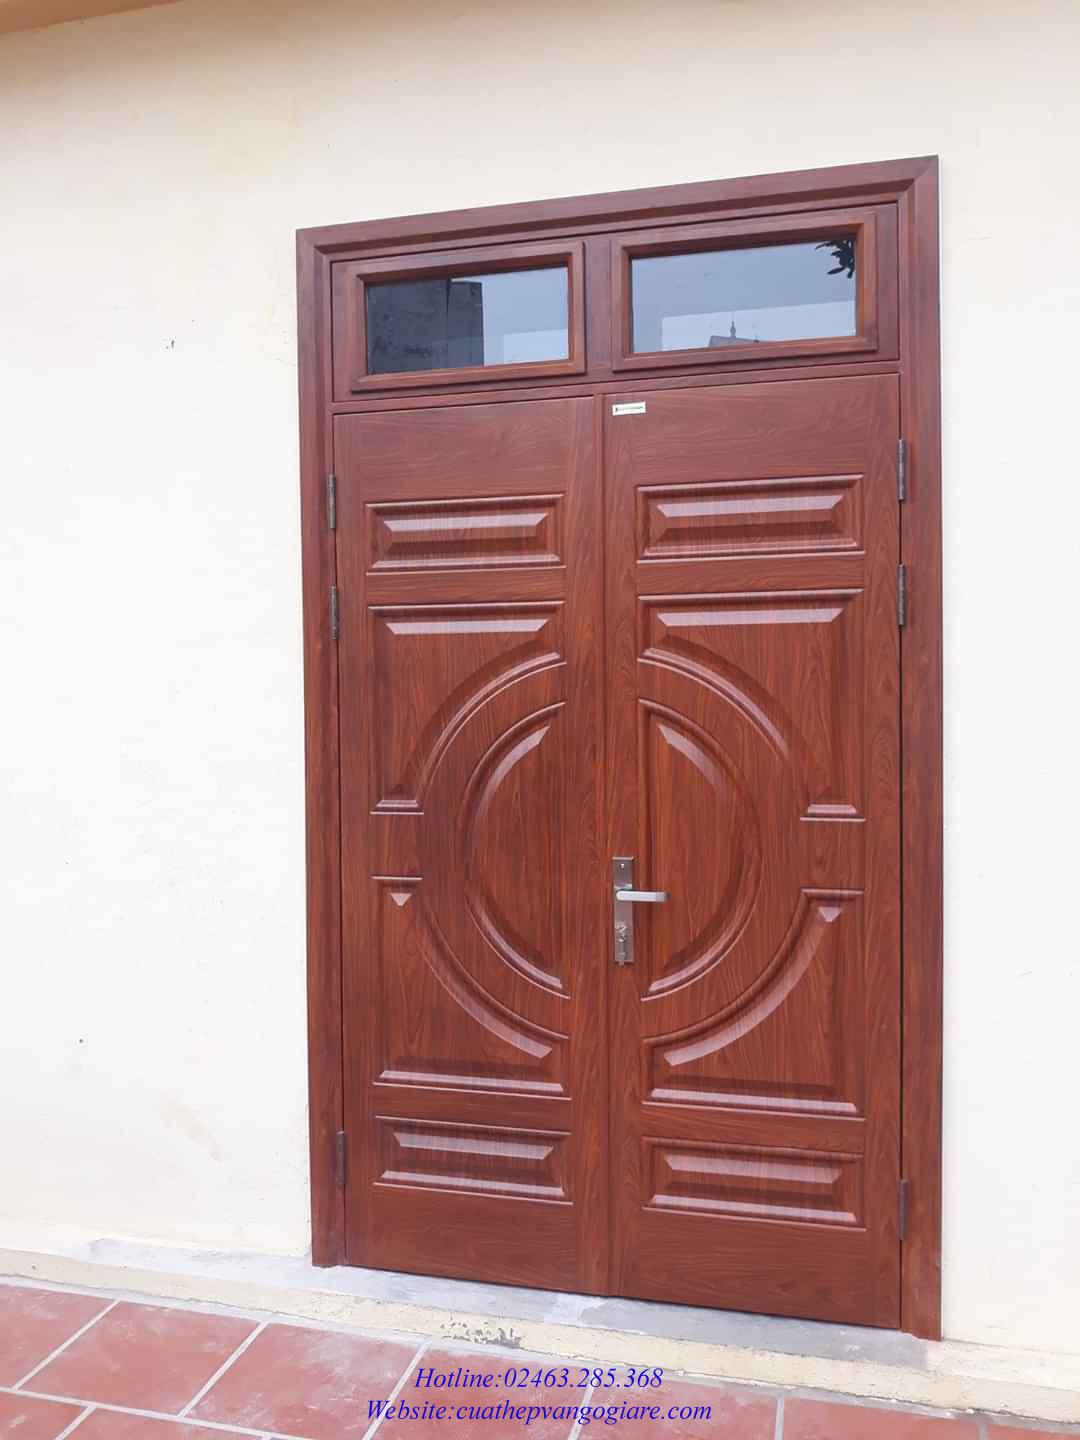 Với cửa thép vân gỗ, sự bền bỉ và độ bảo vệ của chiếc cửa sẽ được nâng lên một tầm cao mới. Bạn sẽ không chỉ được an tâm khi sử dụng mà còn cảm nhận được sự sang trọng và tinh tế từ thiết kế của loại cửa này.